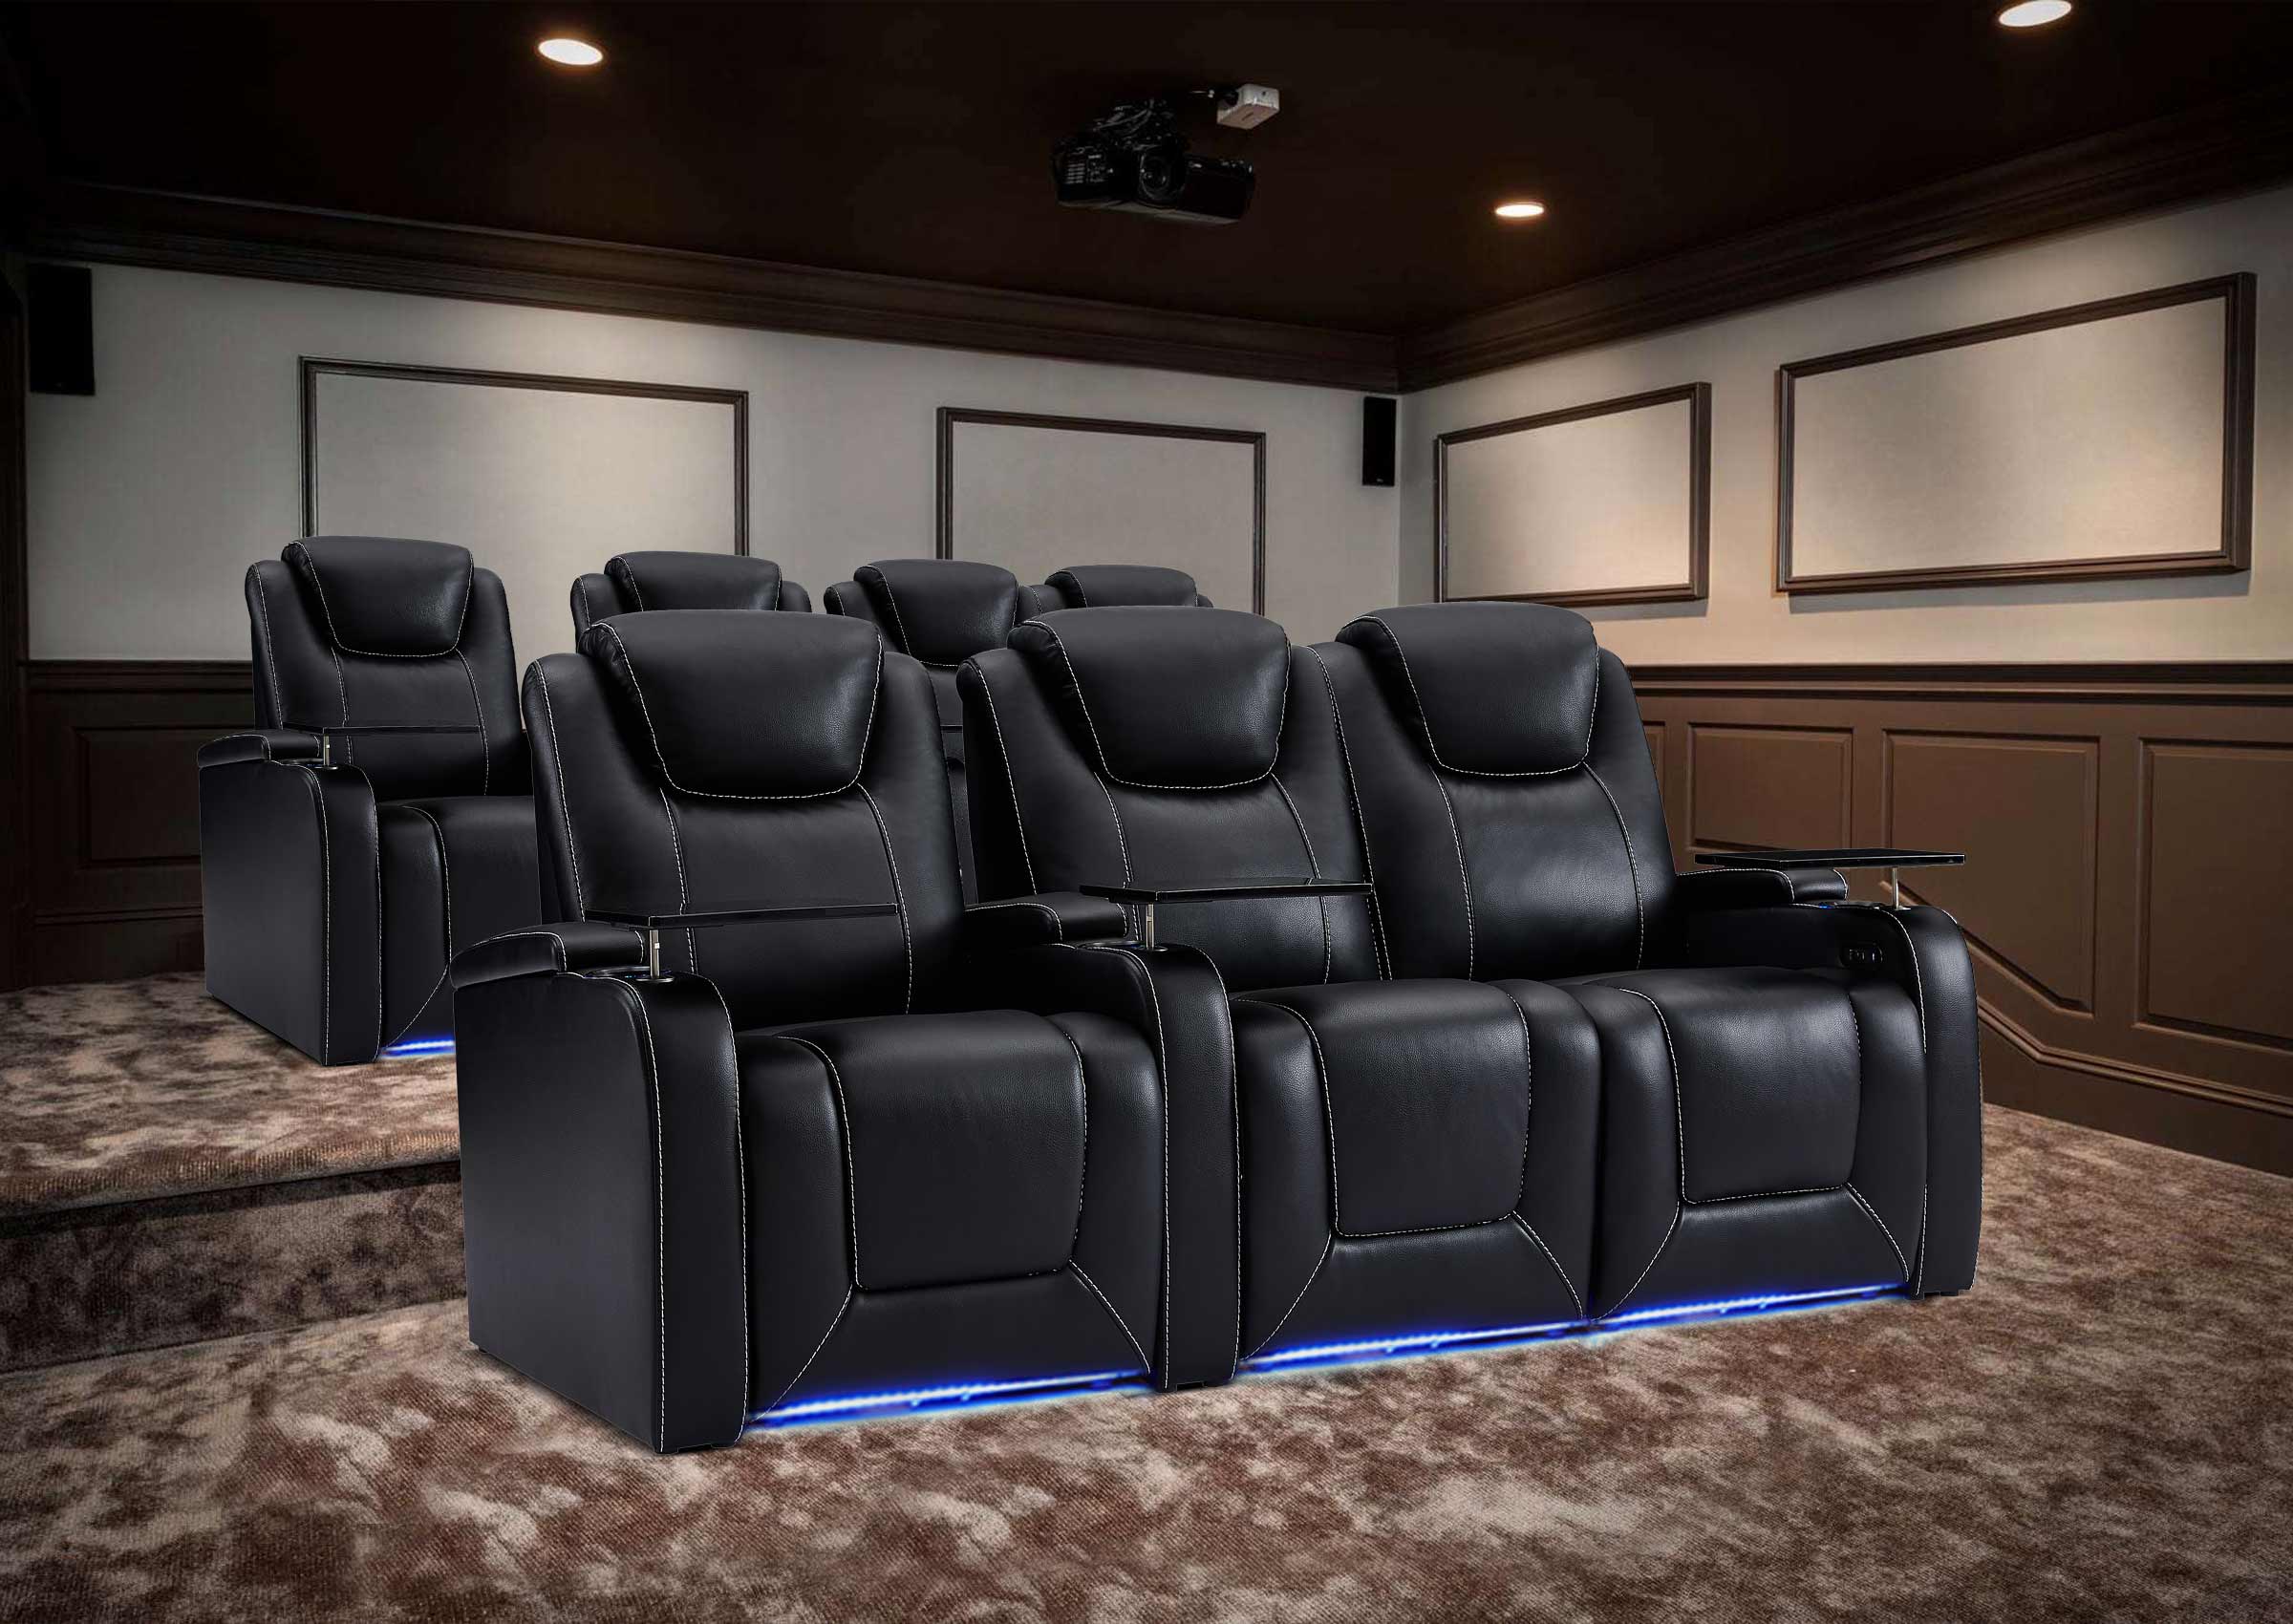 Weilianda Aviator Series Home Theater Seating